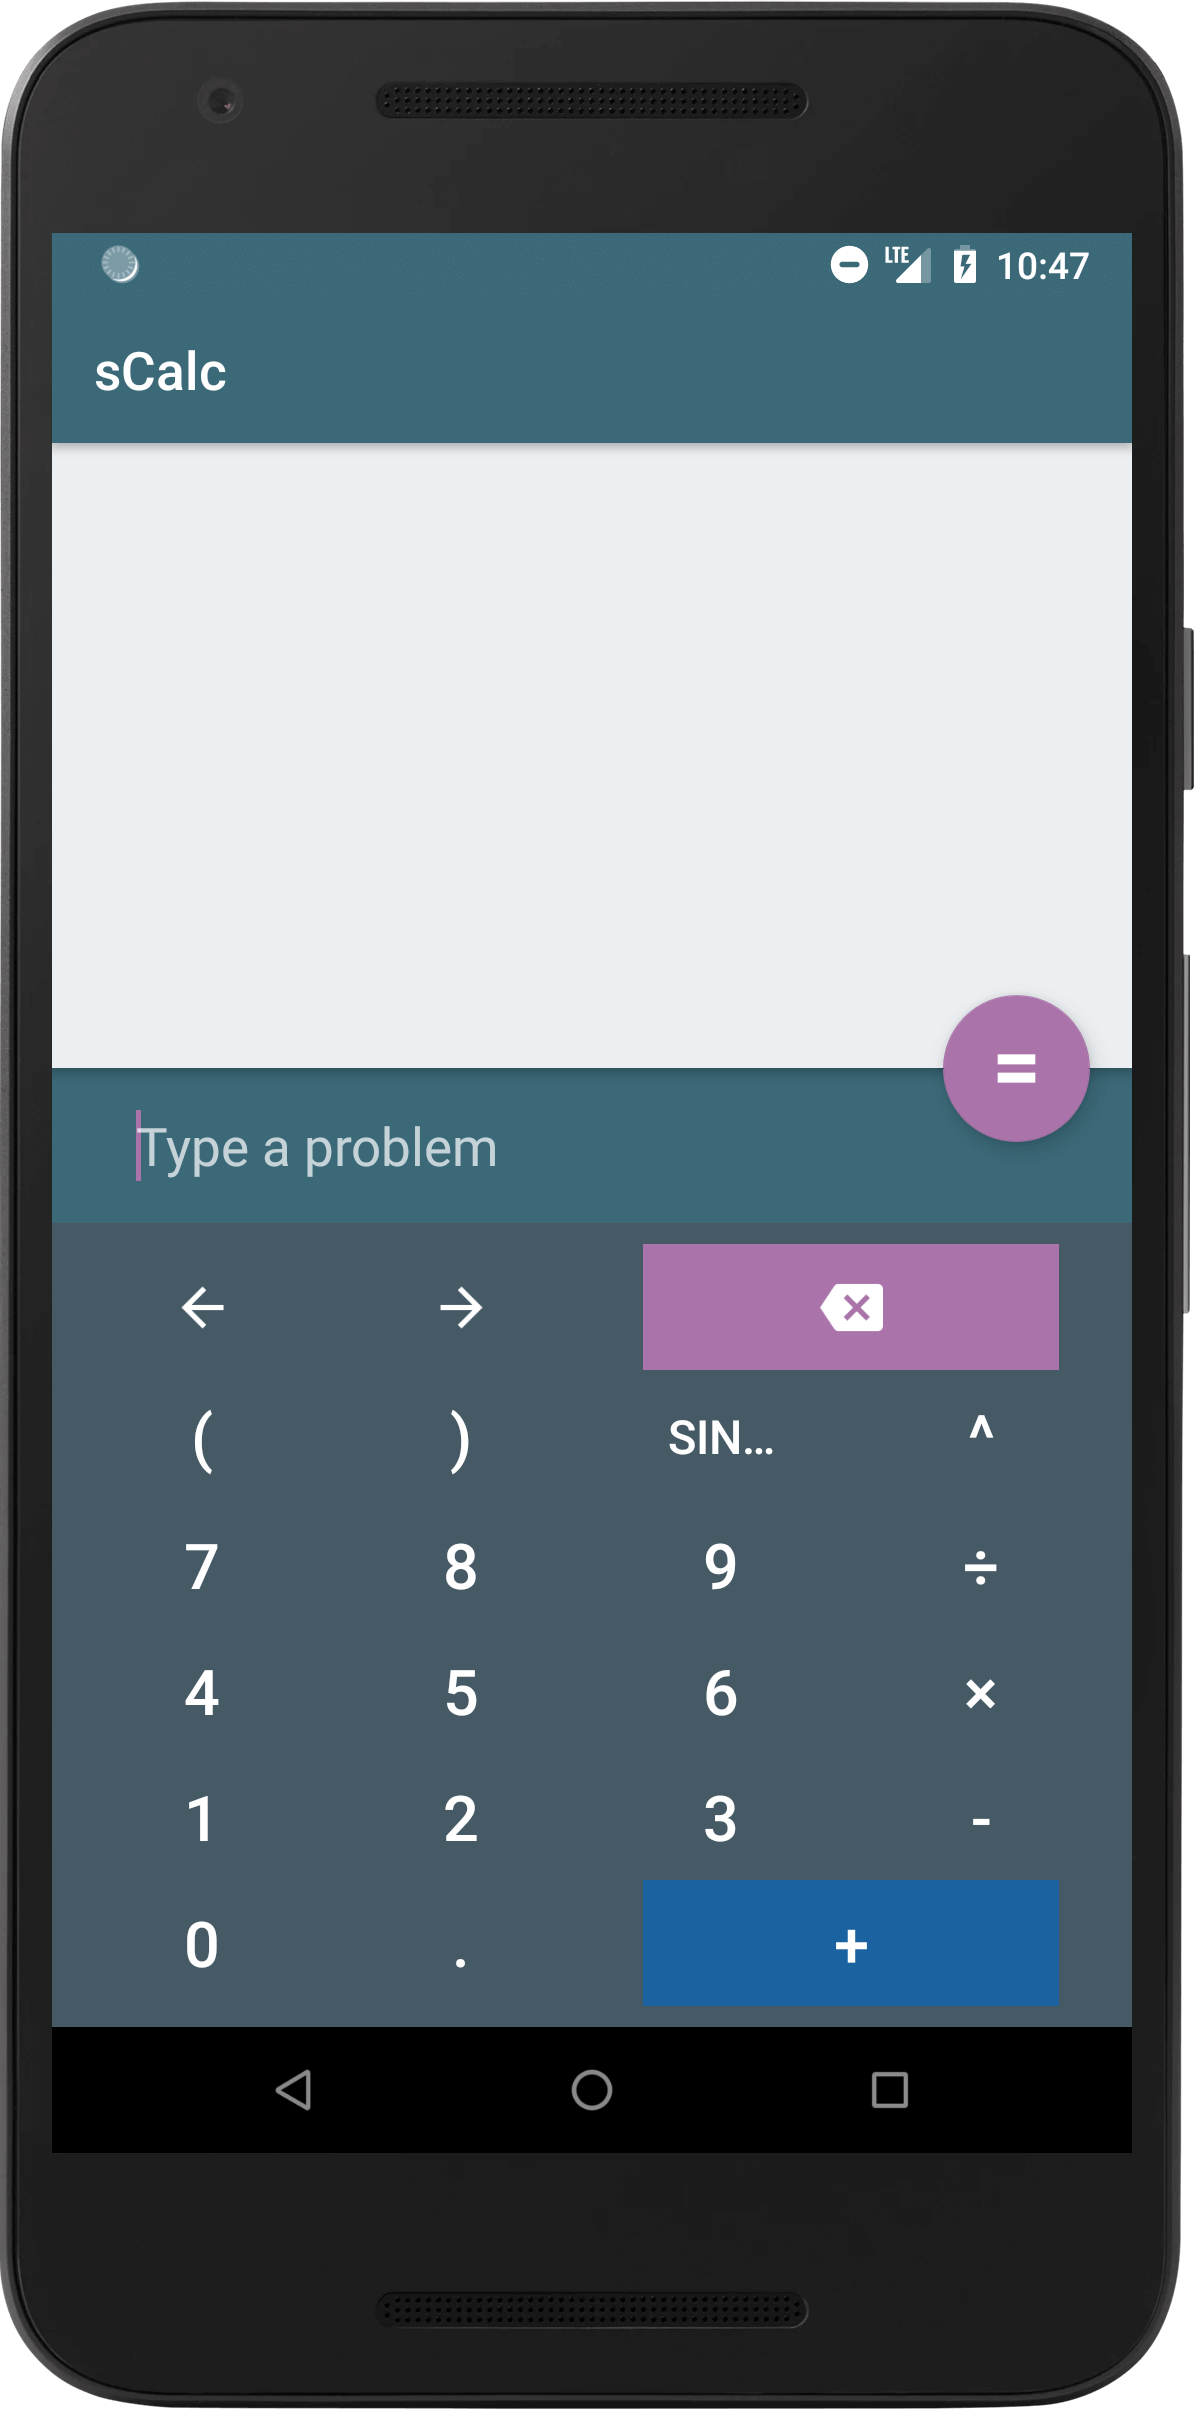 simple calculator